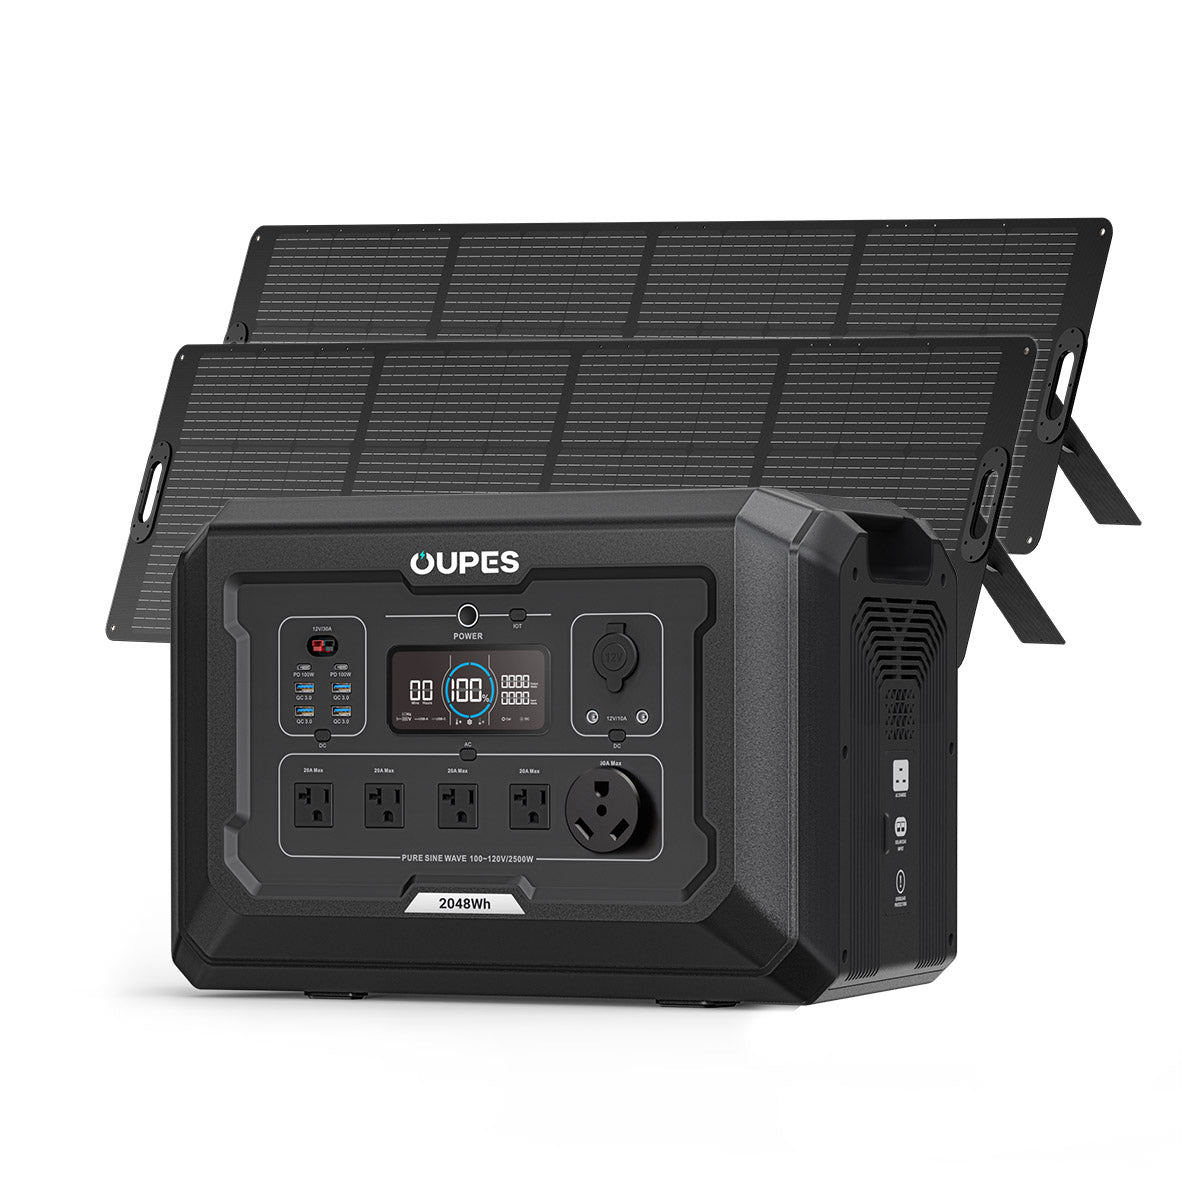 OUPES Mega 2 Solar Kit: 2048Wh Generator + 2x240W Panels